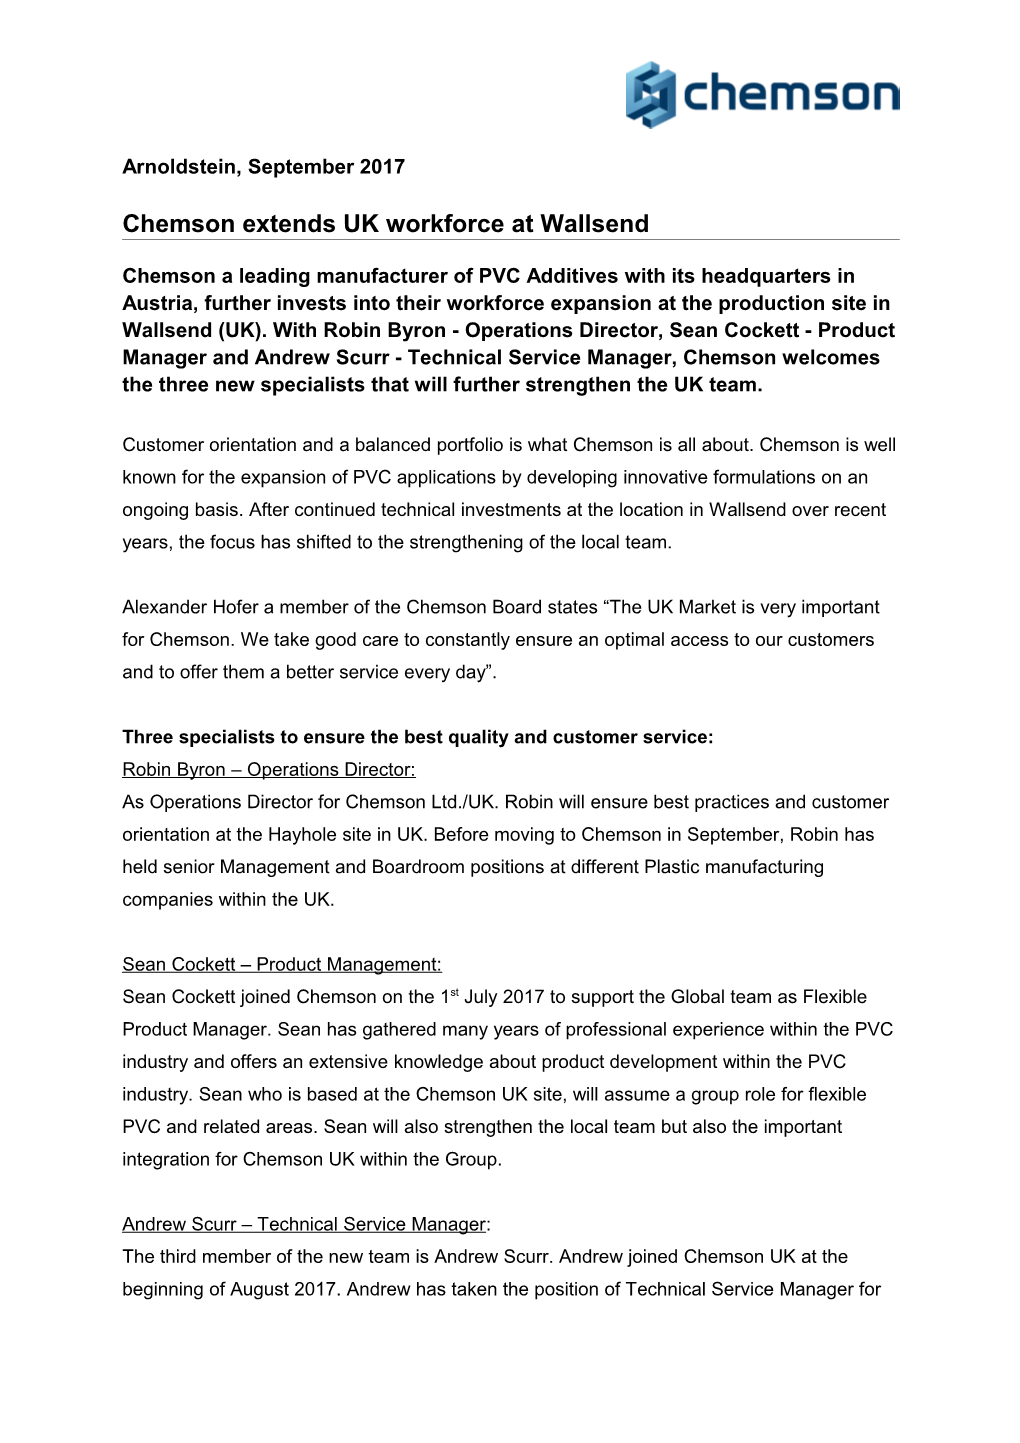 Chemson Extends UK Workforceat Wallsend